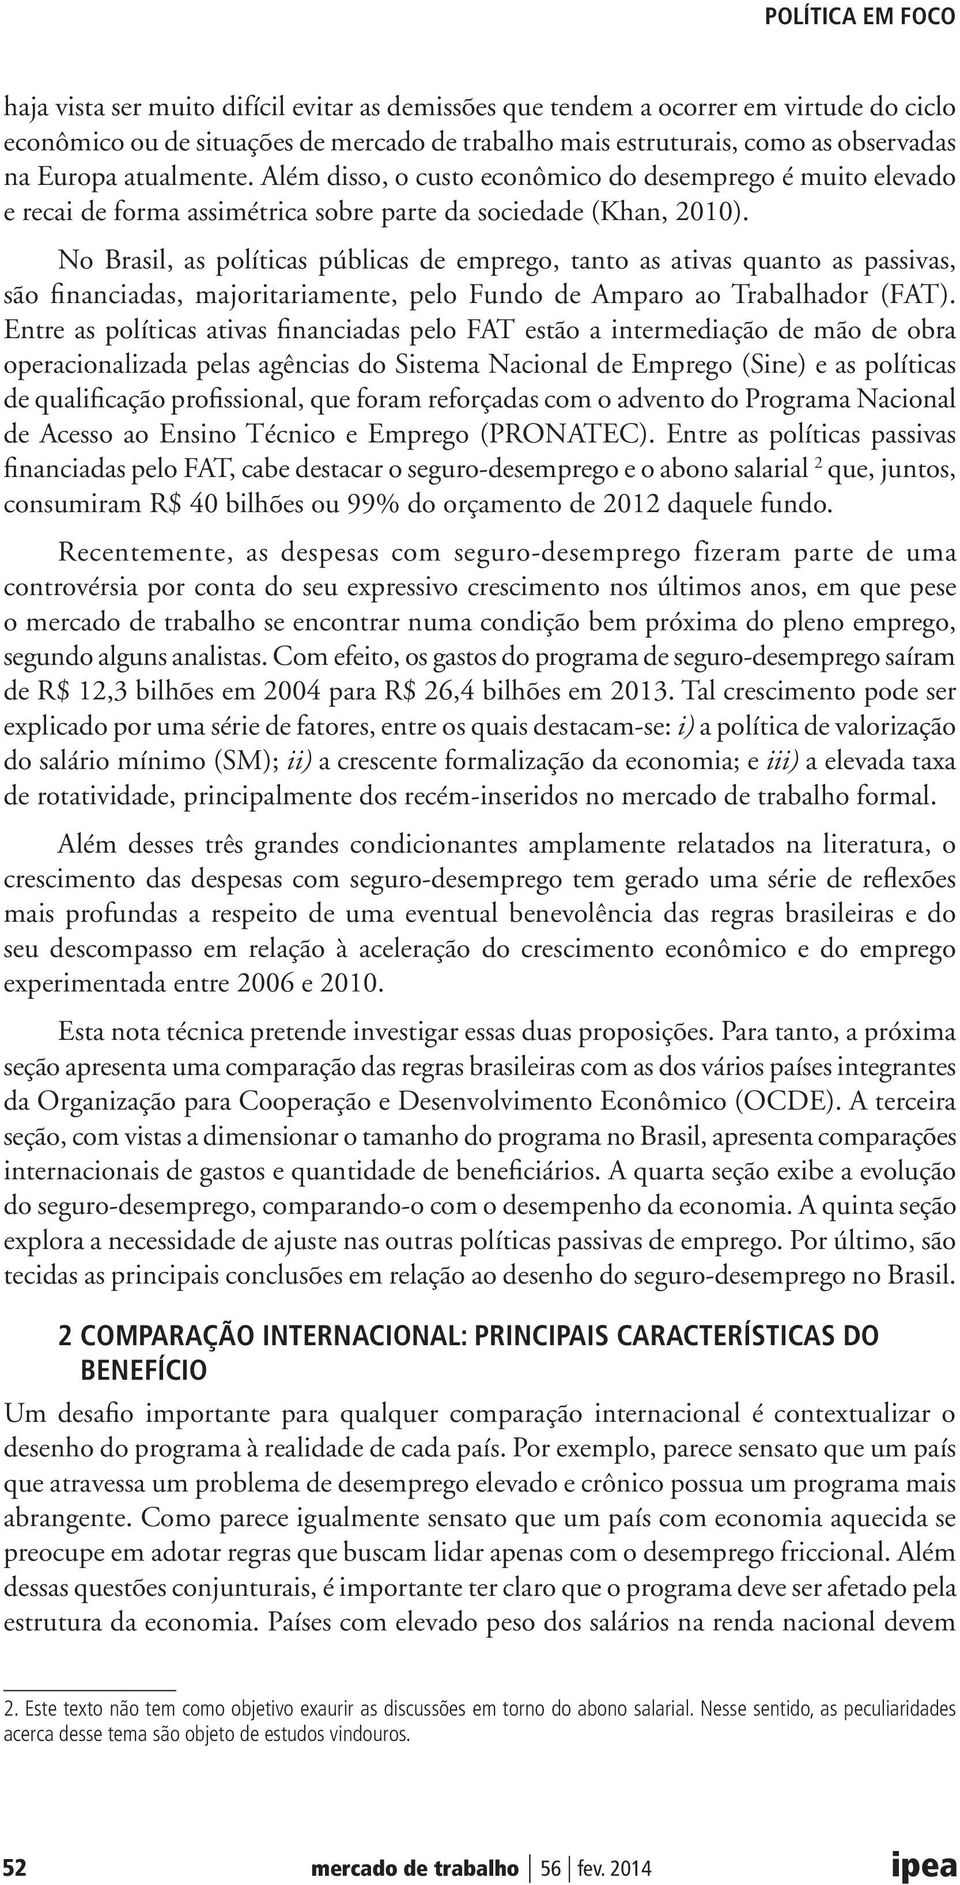 No Brasil, as políticas públicas de emprego, tanto as ativas quanto as passivas, são financiadas, majoritariamente, pelo Fundo de Amparo ao Trabalhador (FAT).